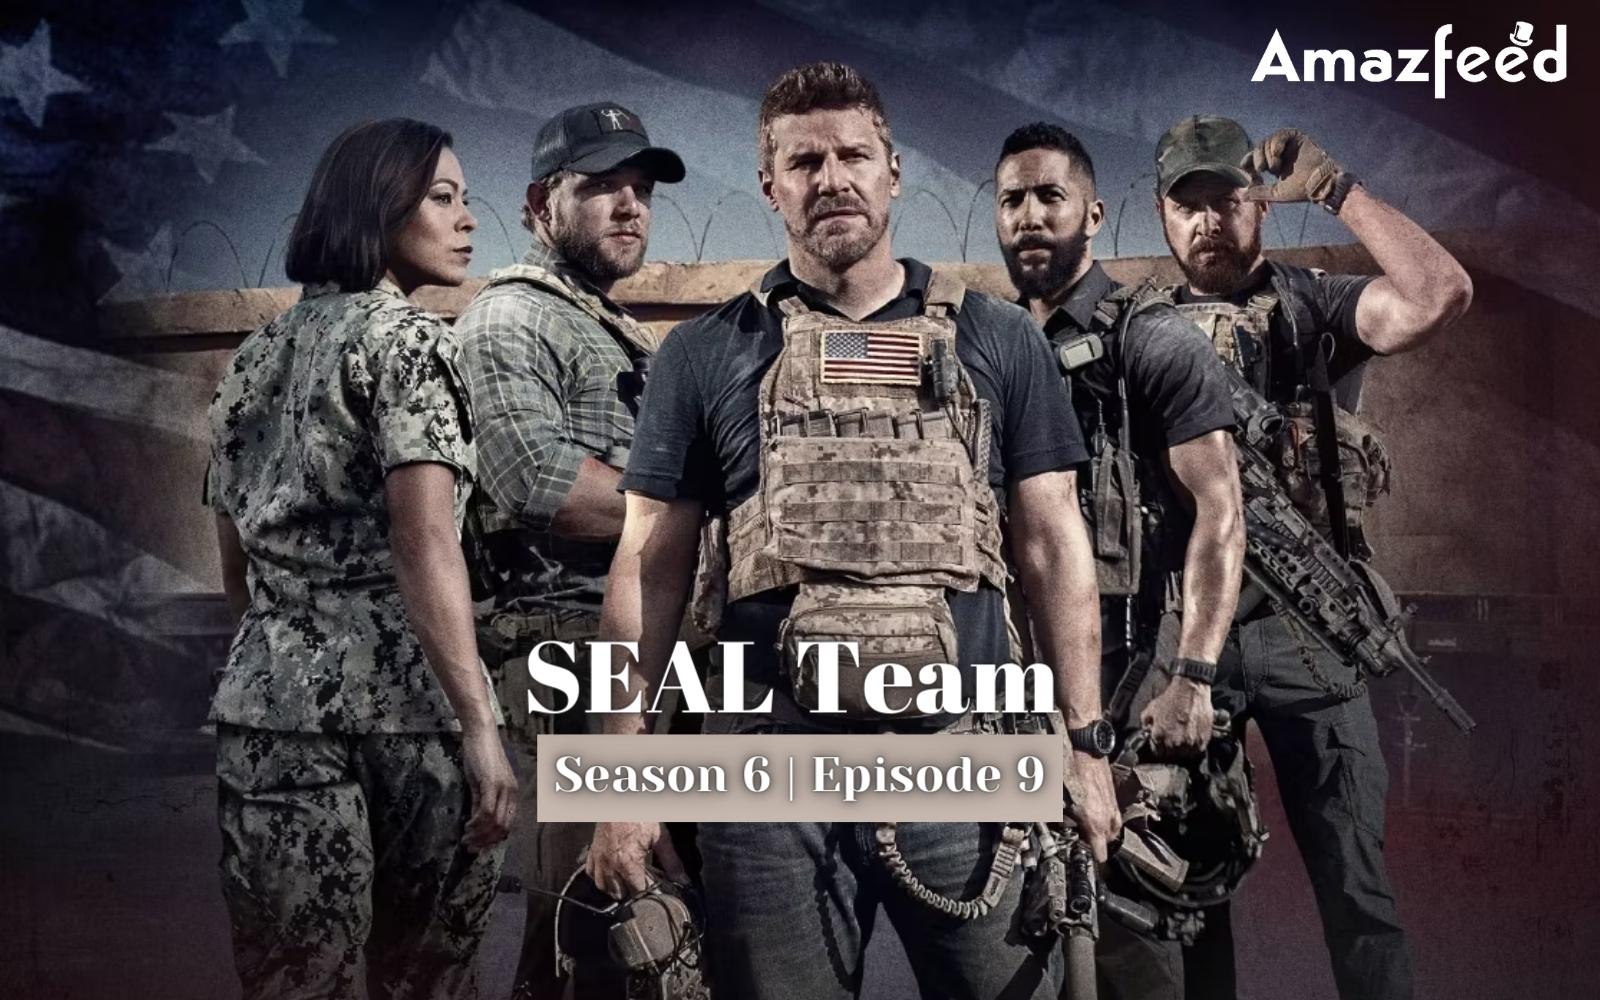 SEAL Team season 6 episode 9